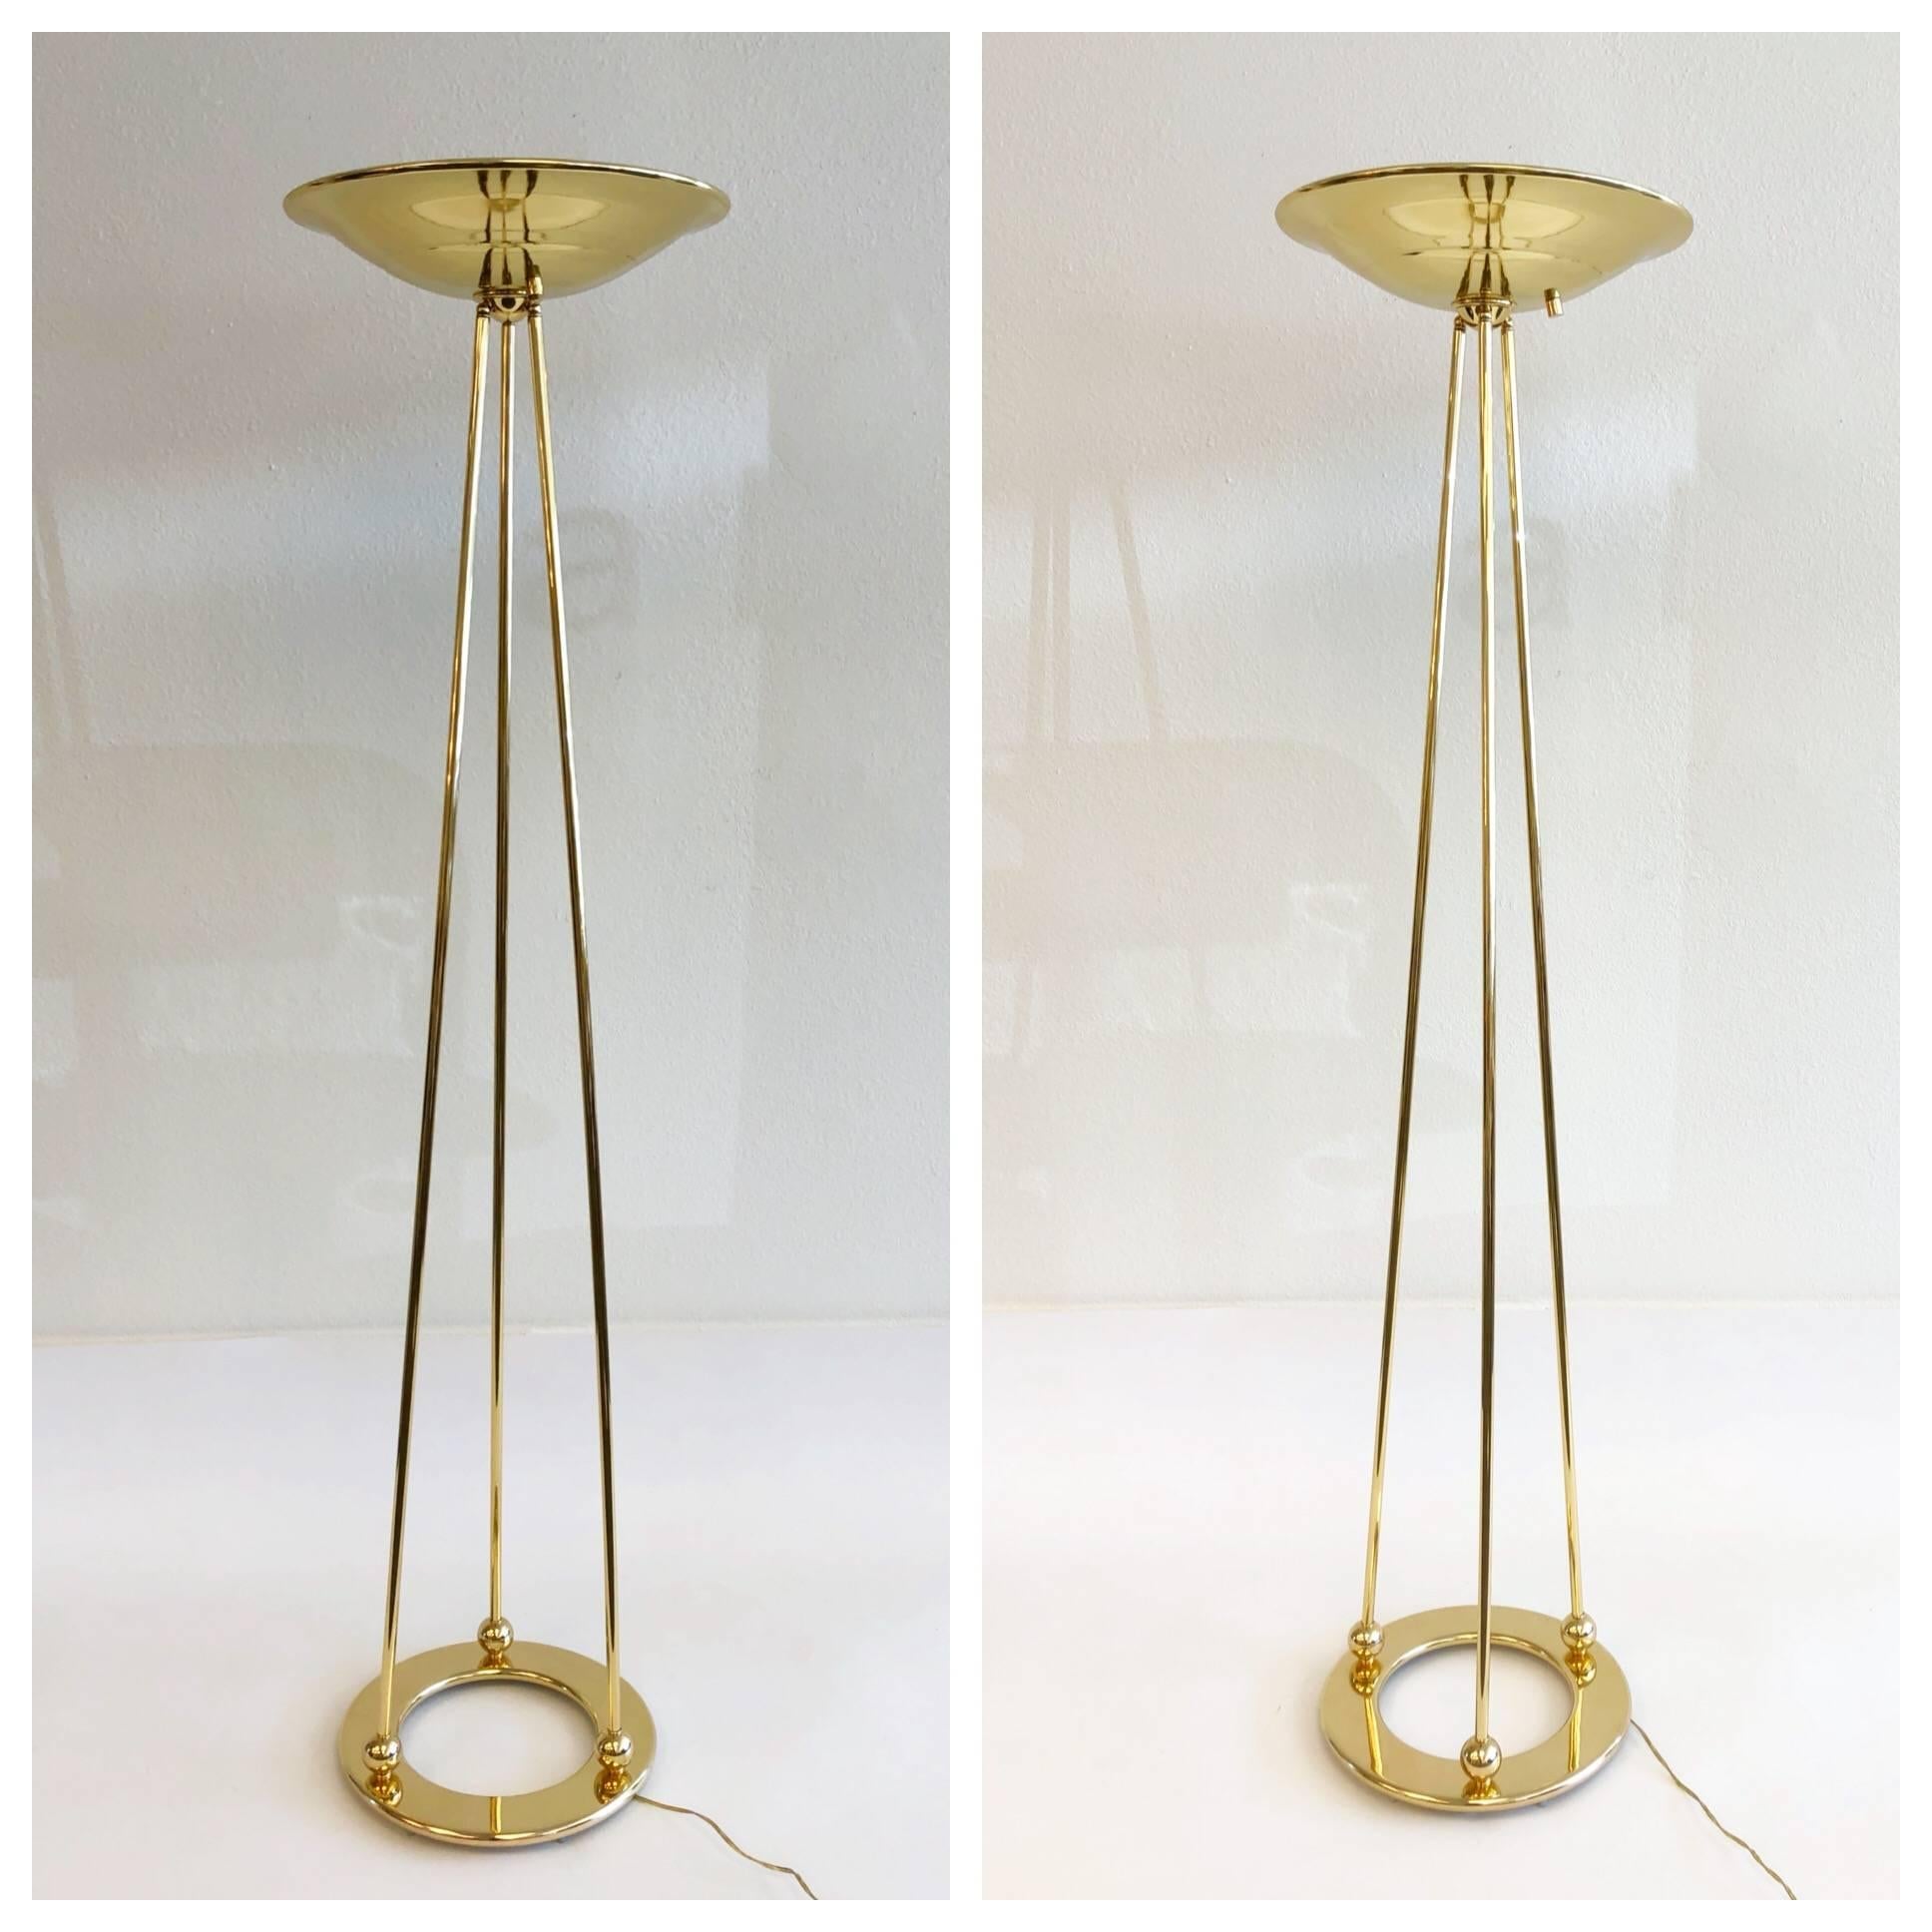 Ein schönes Paar von 1970er Jahren polnisch Messing Fackel Stehlampen von Casella.
Die Lampen sind neu verkabelt worden. Die Lampen sind mit einem Dimmer am Schirm ausgestattet und können mit einer 300-Watt-Halogenbirne betrieben werden. Leichte